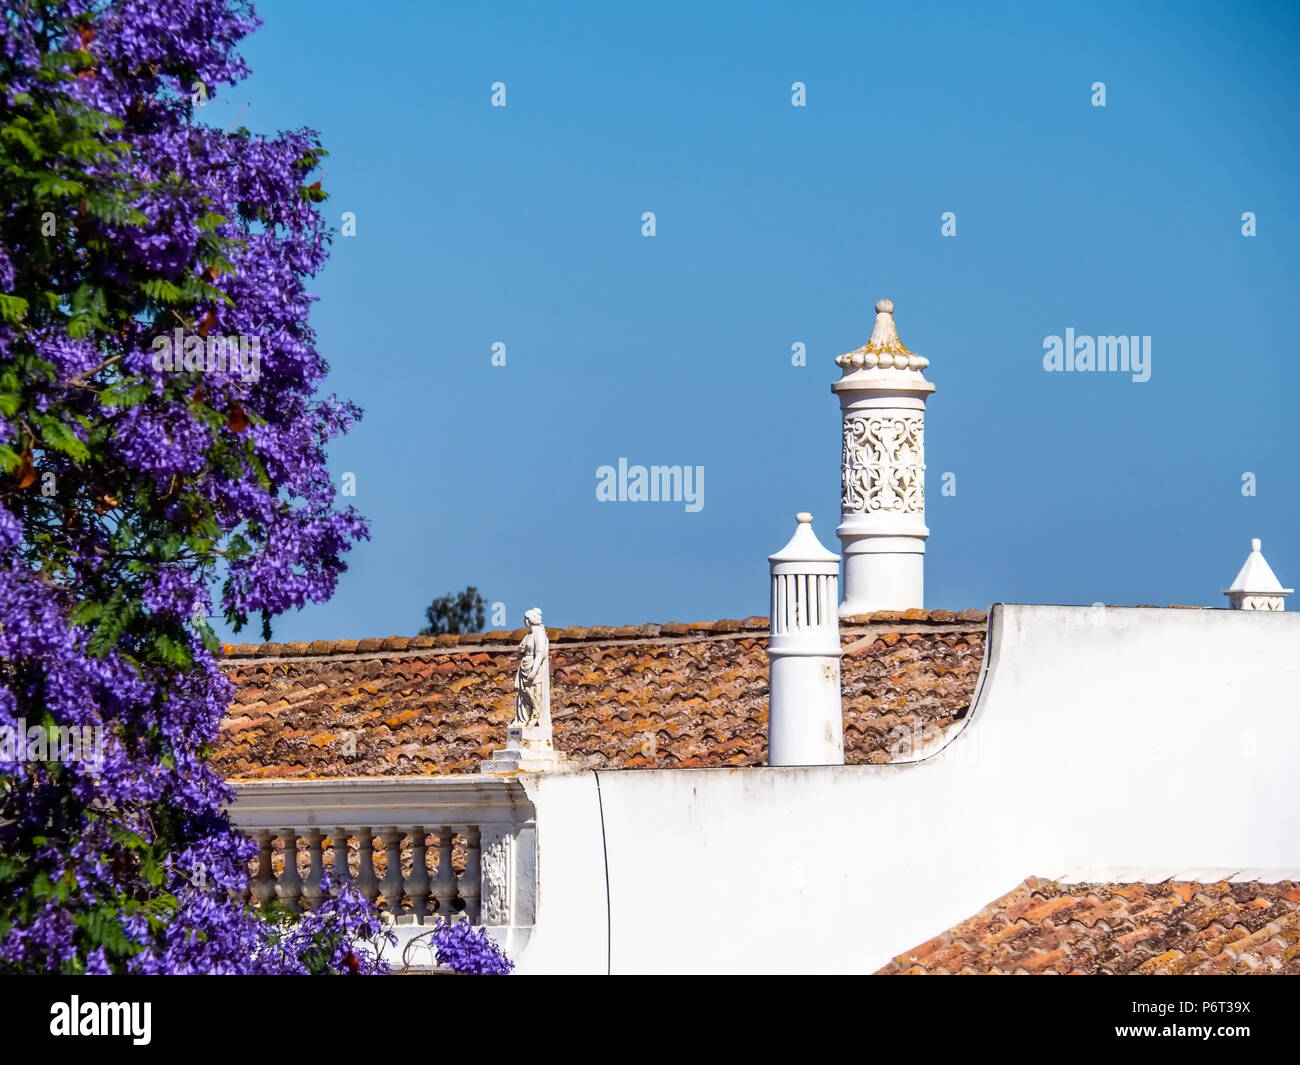 Cheminées décoratives typique sur les toits de maisons, Algarve, Portugal Banque D'Images